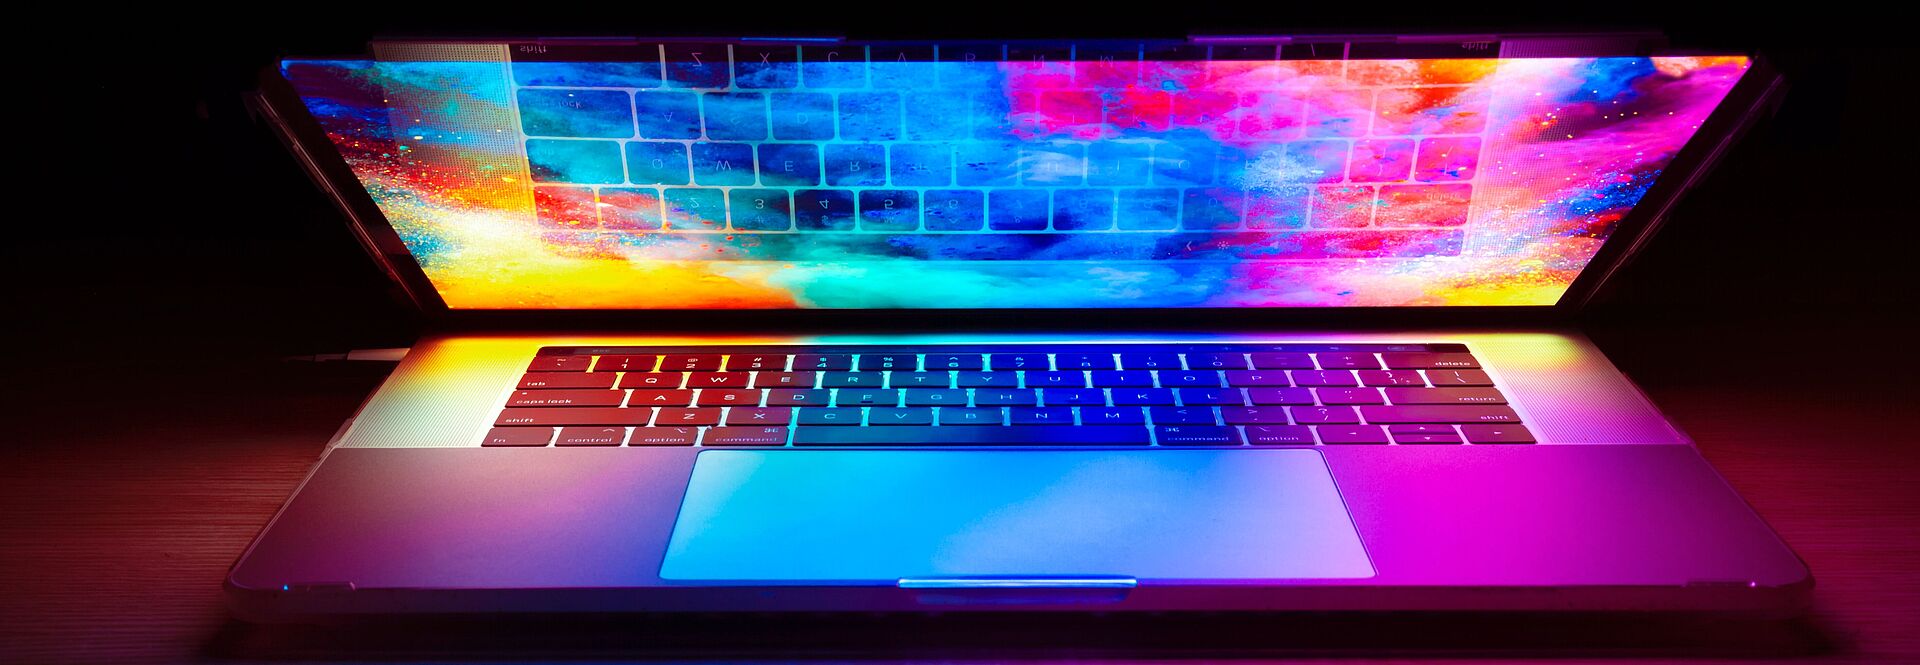 Halb geöffneter Laptop mit bunten Farben am Display